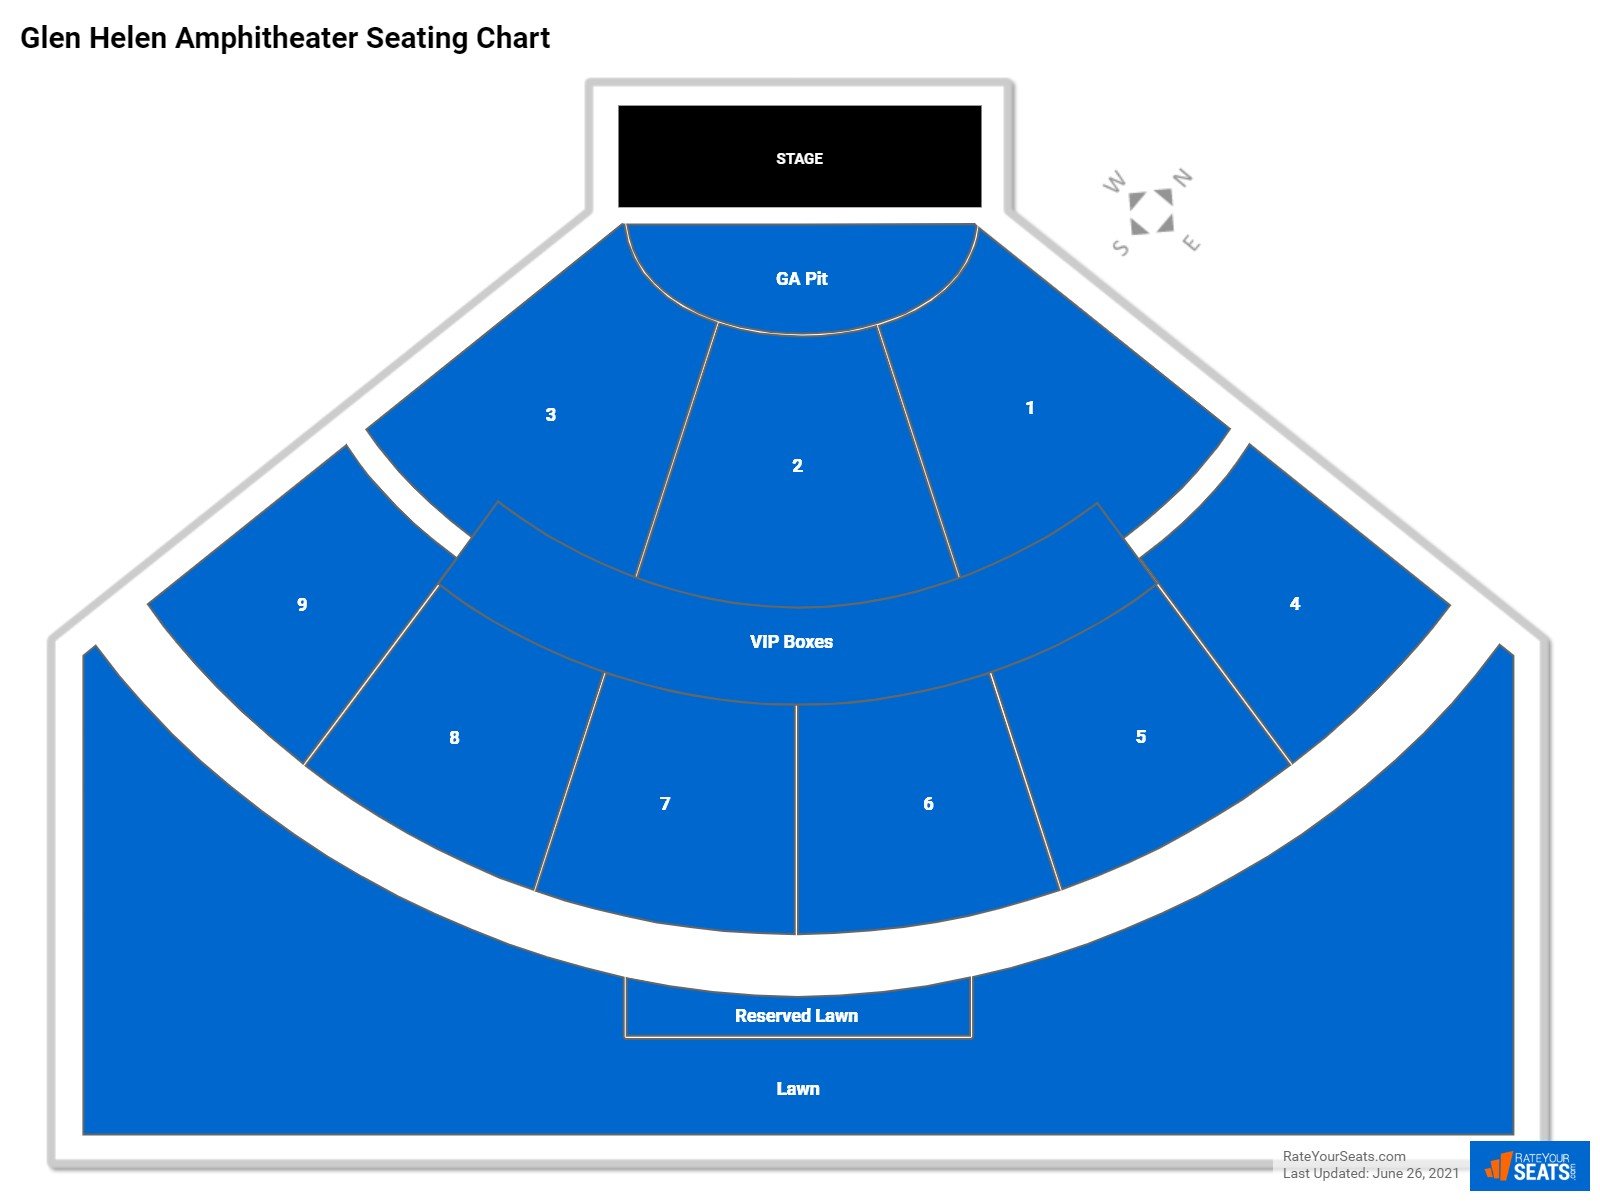 Glen Helen Amphitheater Concert Seating Chart